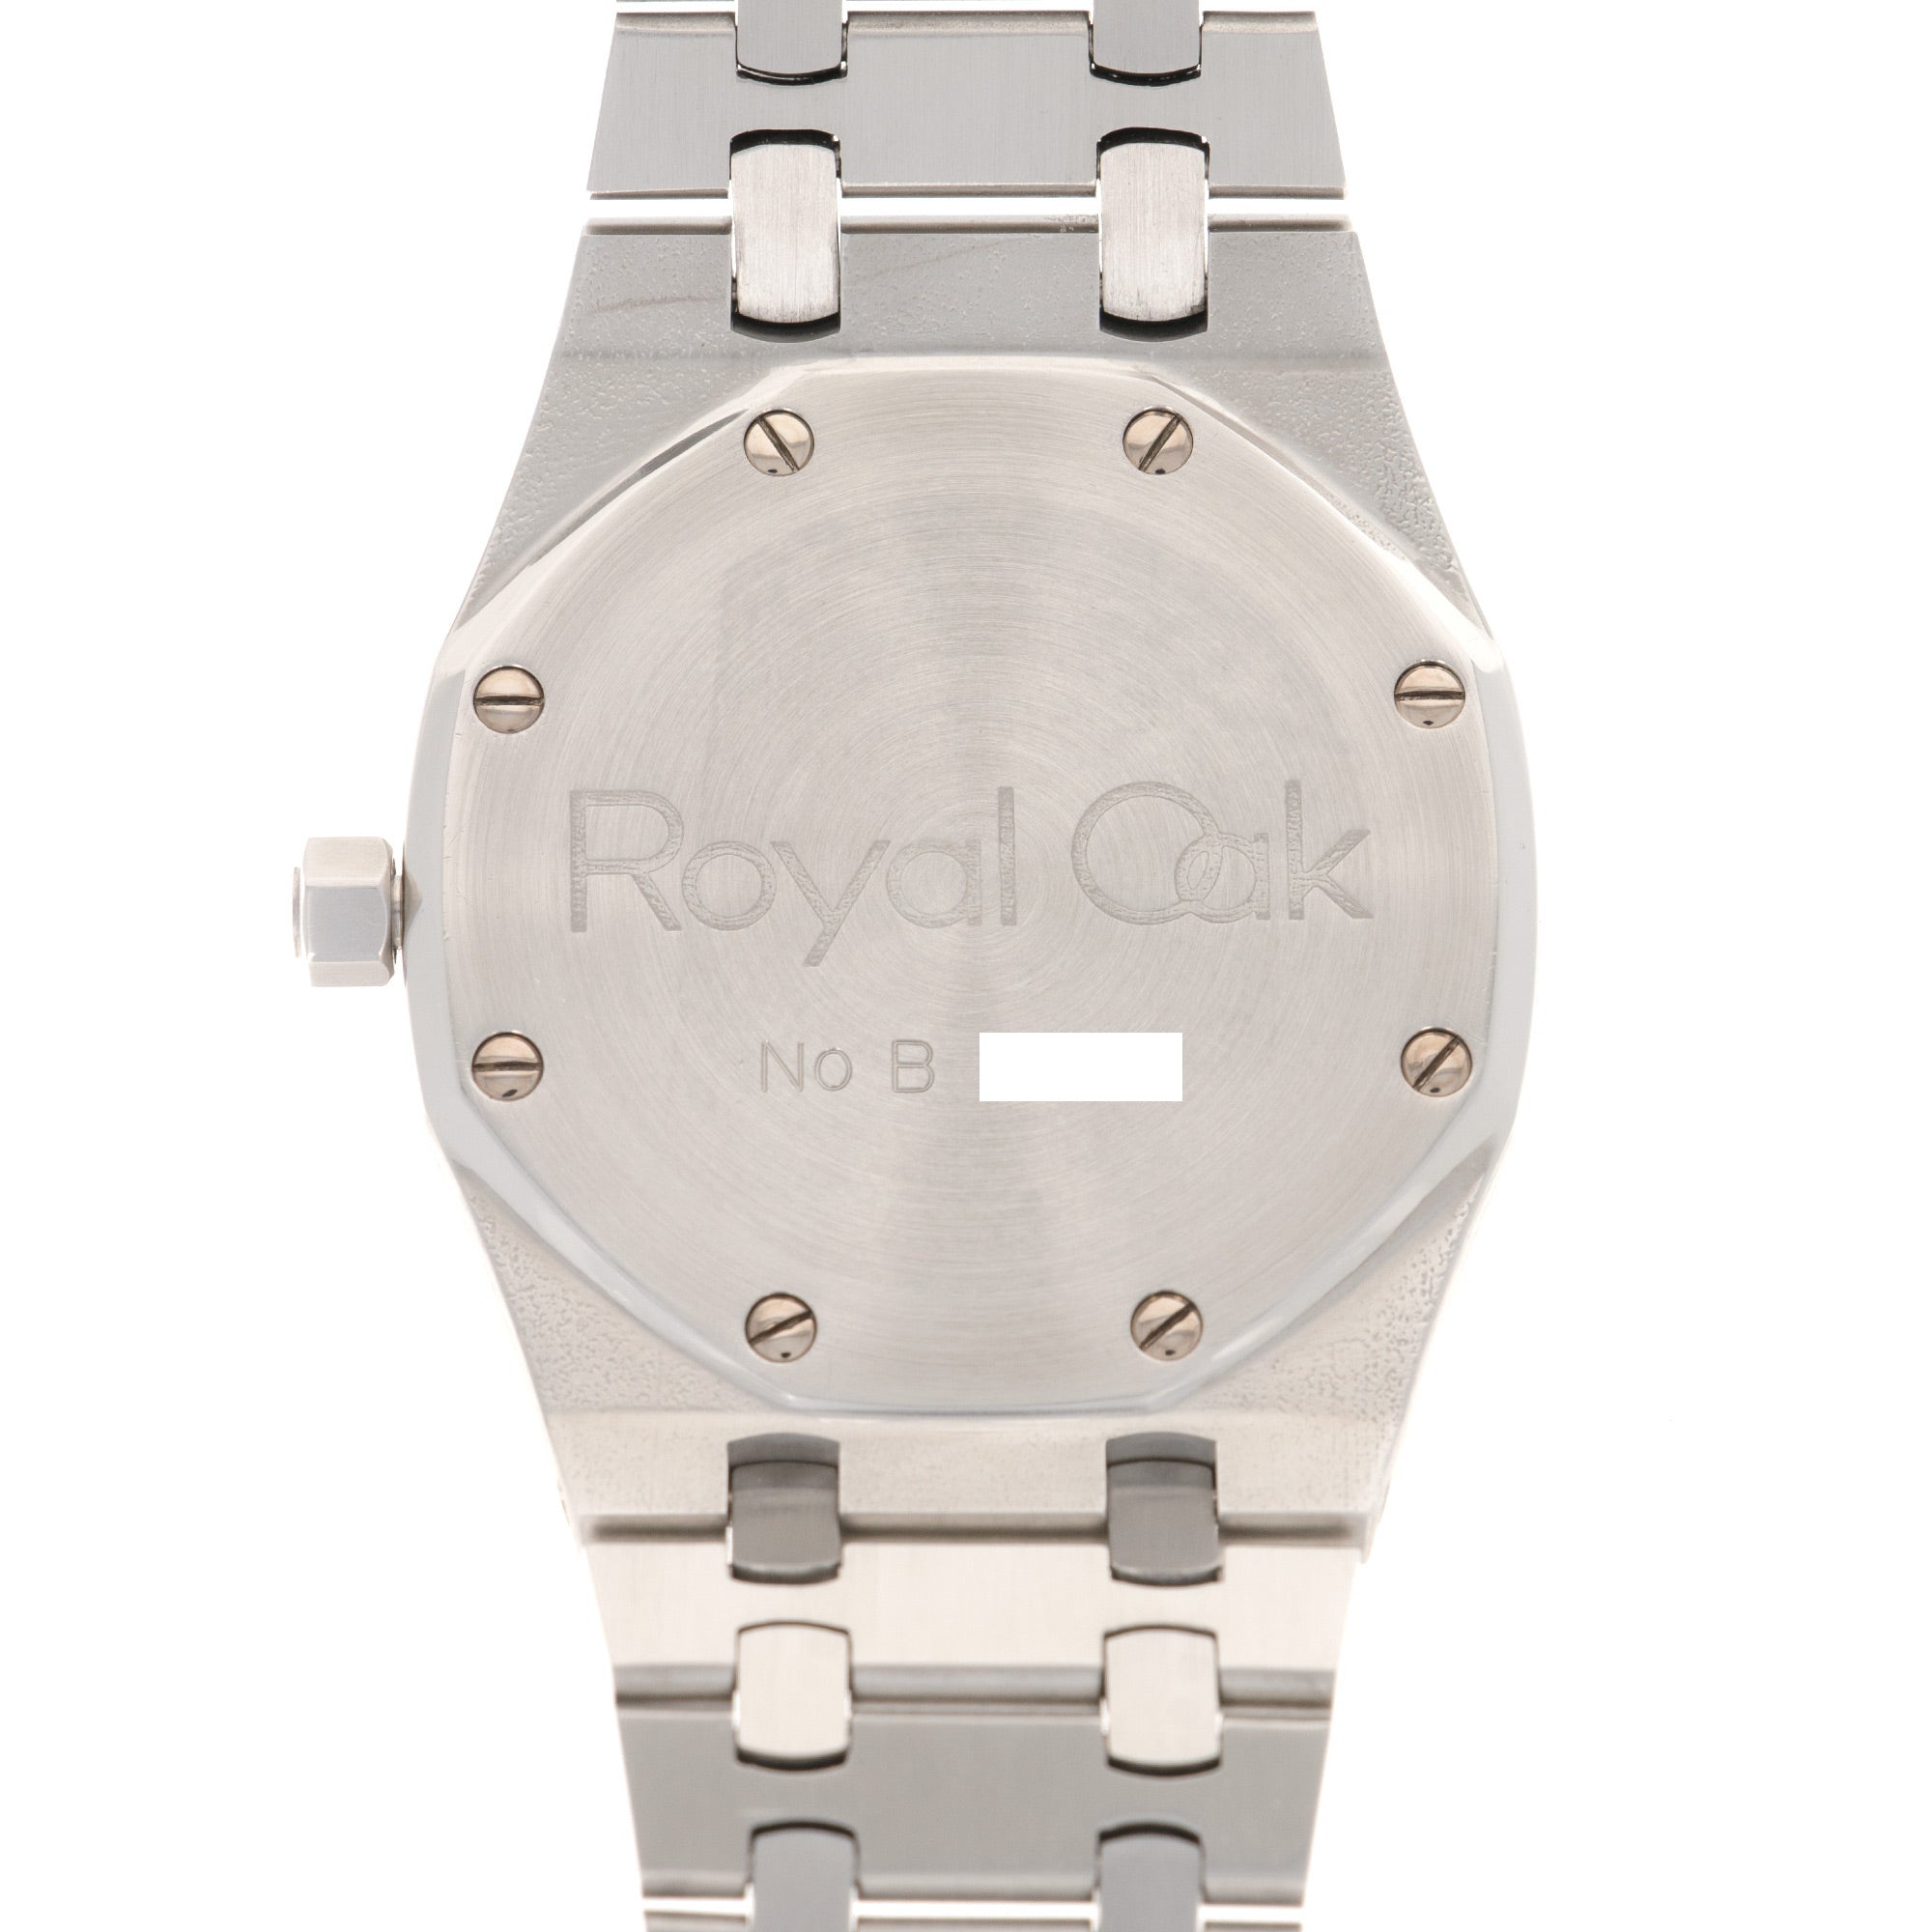 Audemars Piguet - Audemars Piguet Royal Oak Jumbo B-Series Watch Ref. 5402 - The Keystone Watches